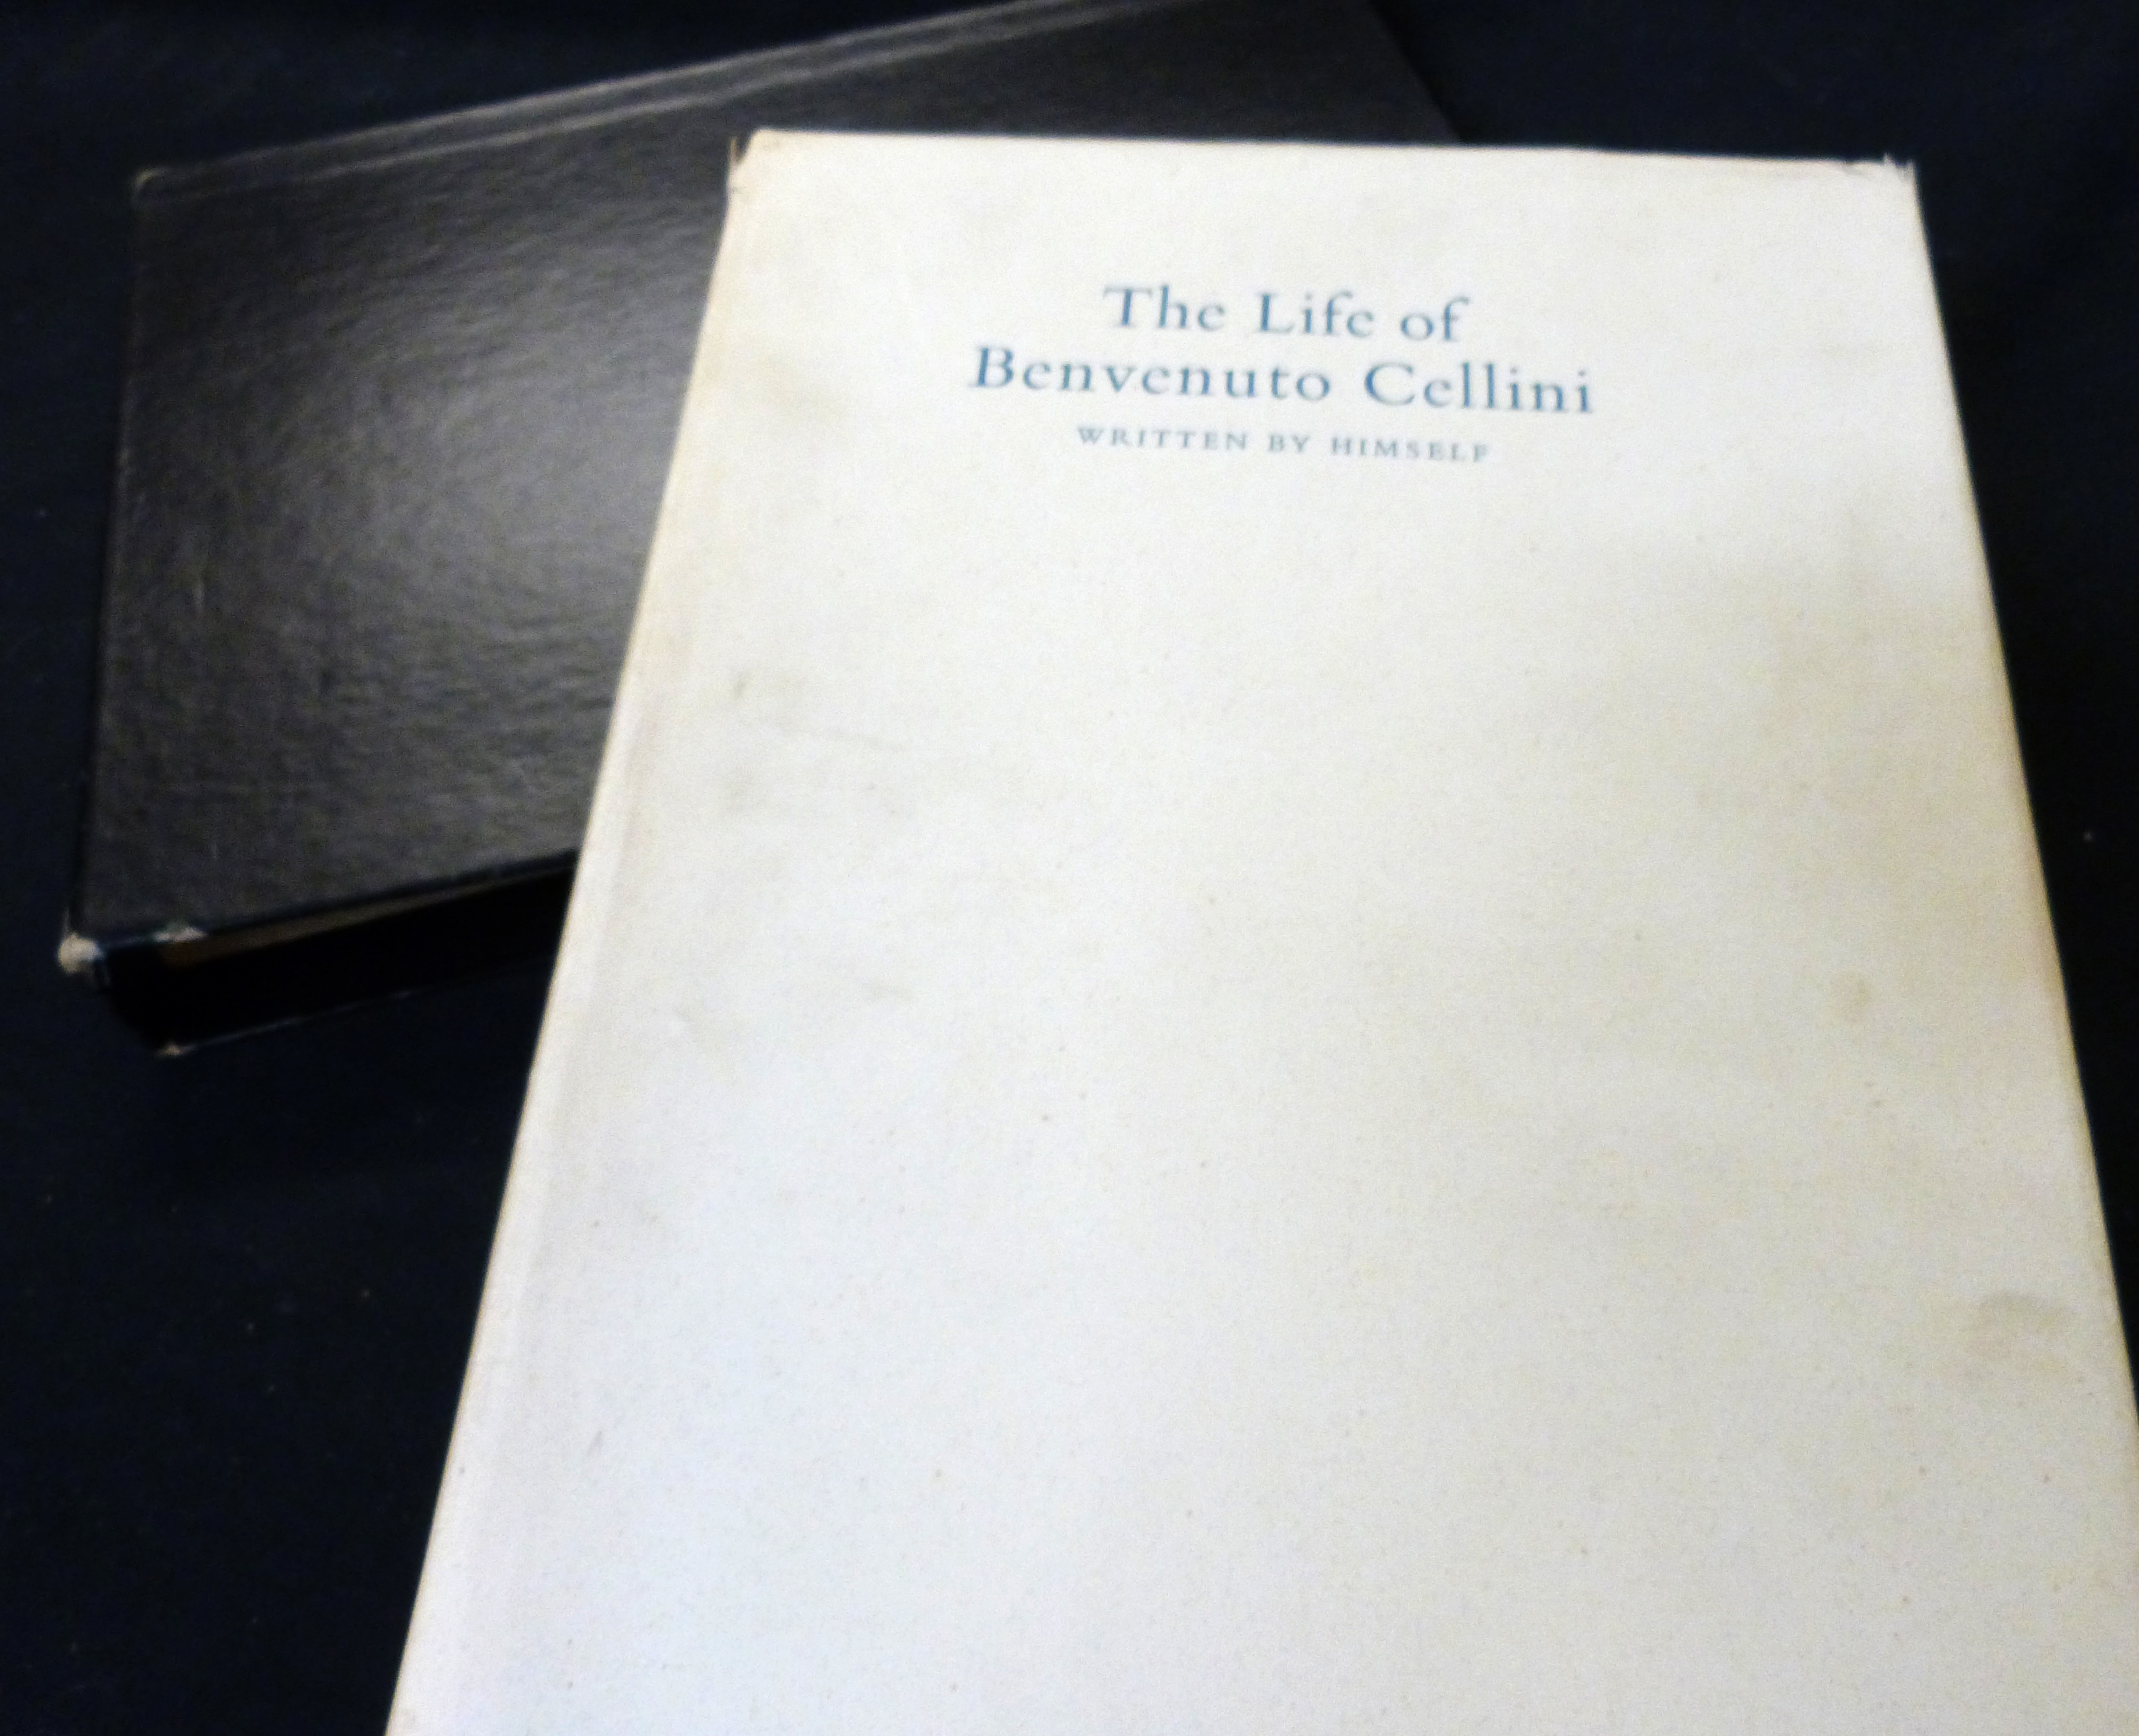 BENVENUTO CELLINI: THE LIFE OF BENVENUTO CELLINI WRITTEN BY HIMSELF, ed John Addington Symonds, - Image 2 of 2